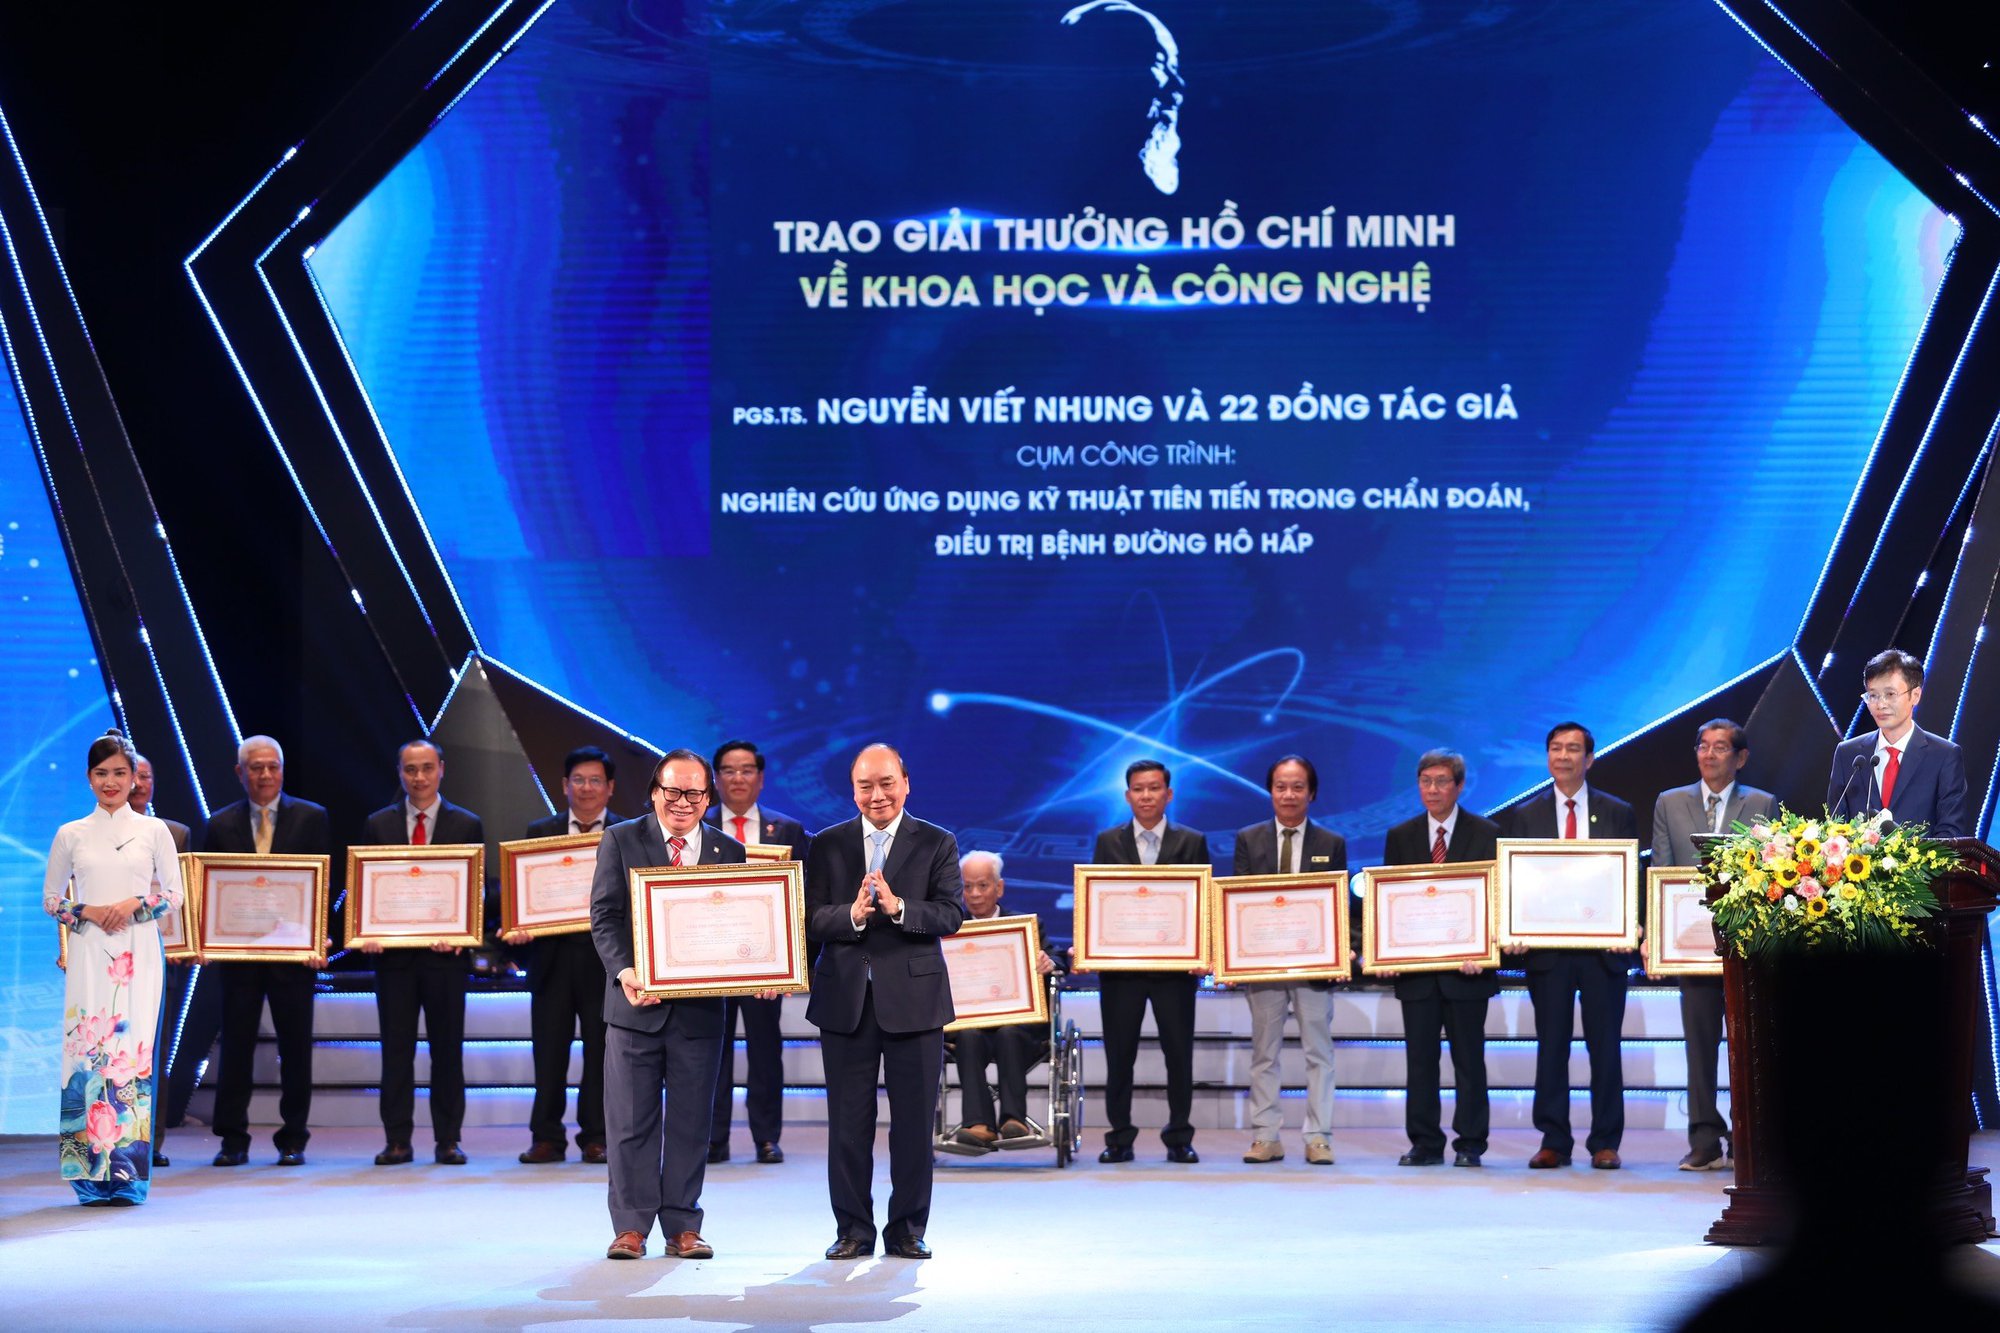 Giải thưởng Hồ Chí Minh dành cho đội ngũ phòng chống lao và bệnh phổi Việt Nam - Ảnh 1.